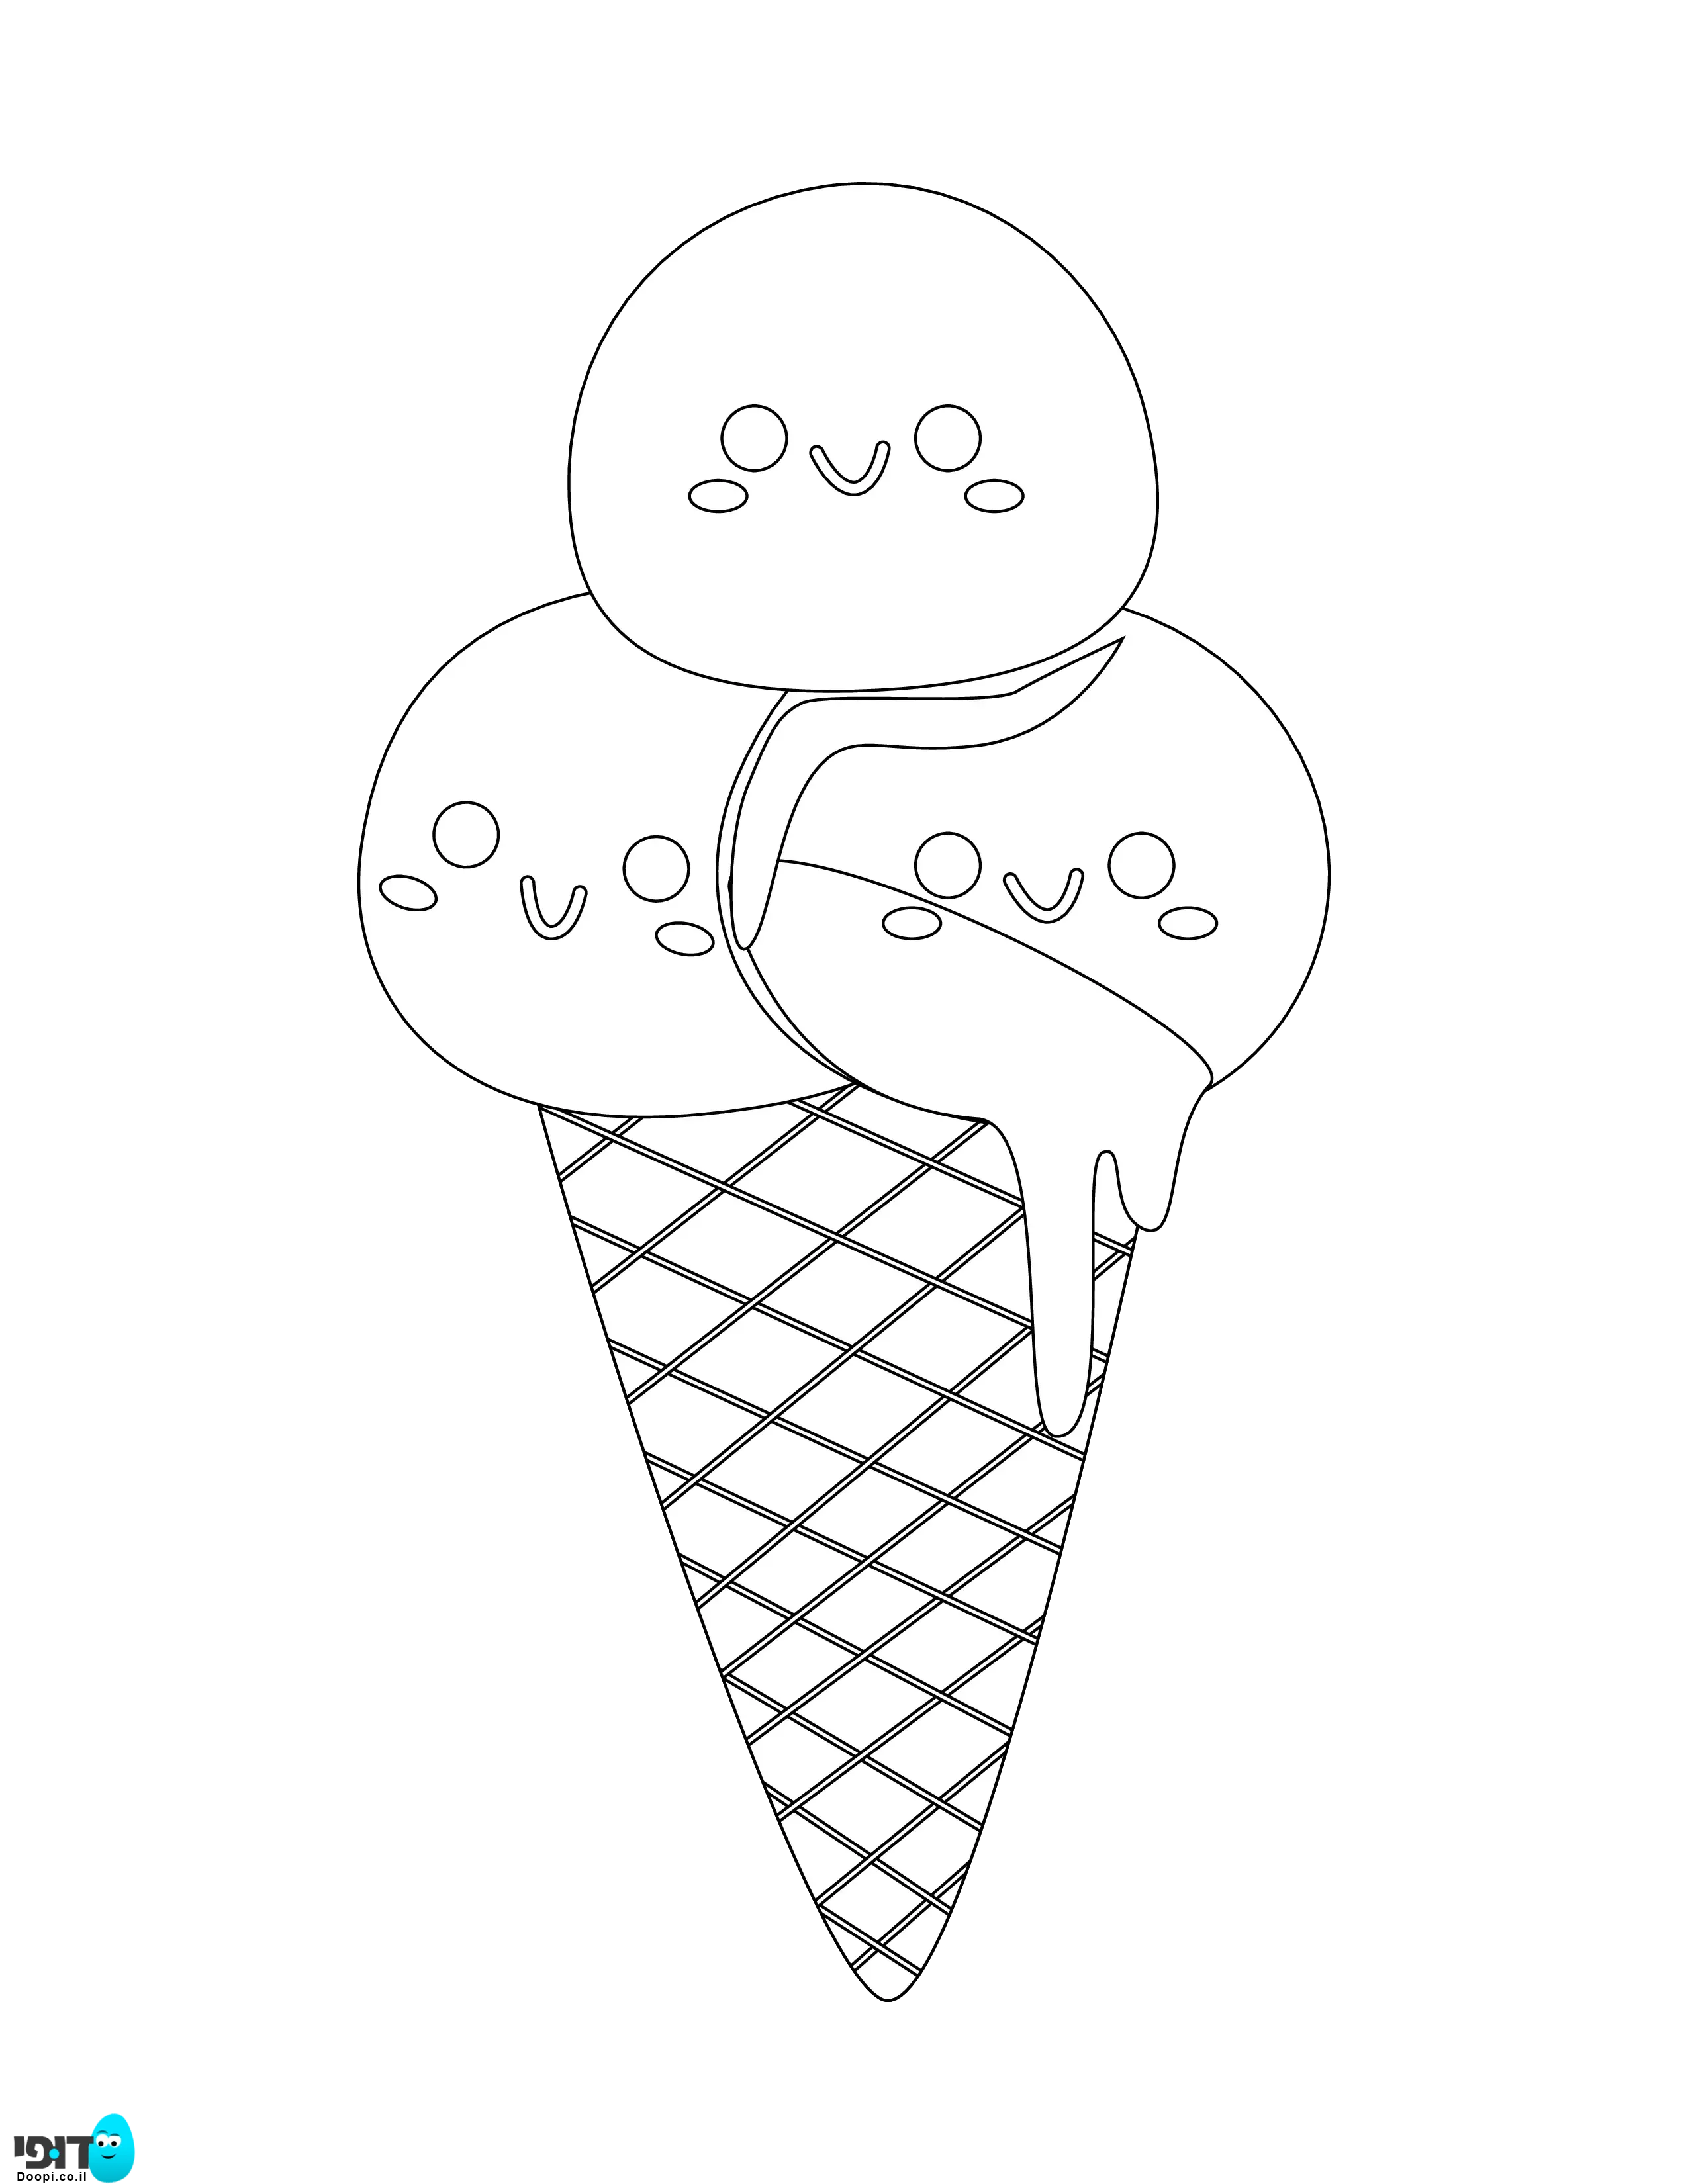 דף צביעה של גלידה עם חיוכים